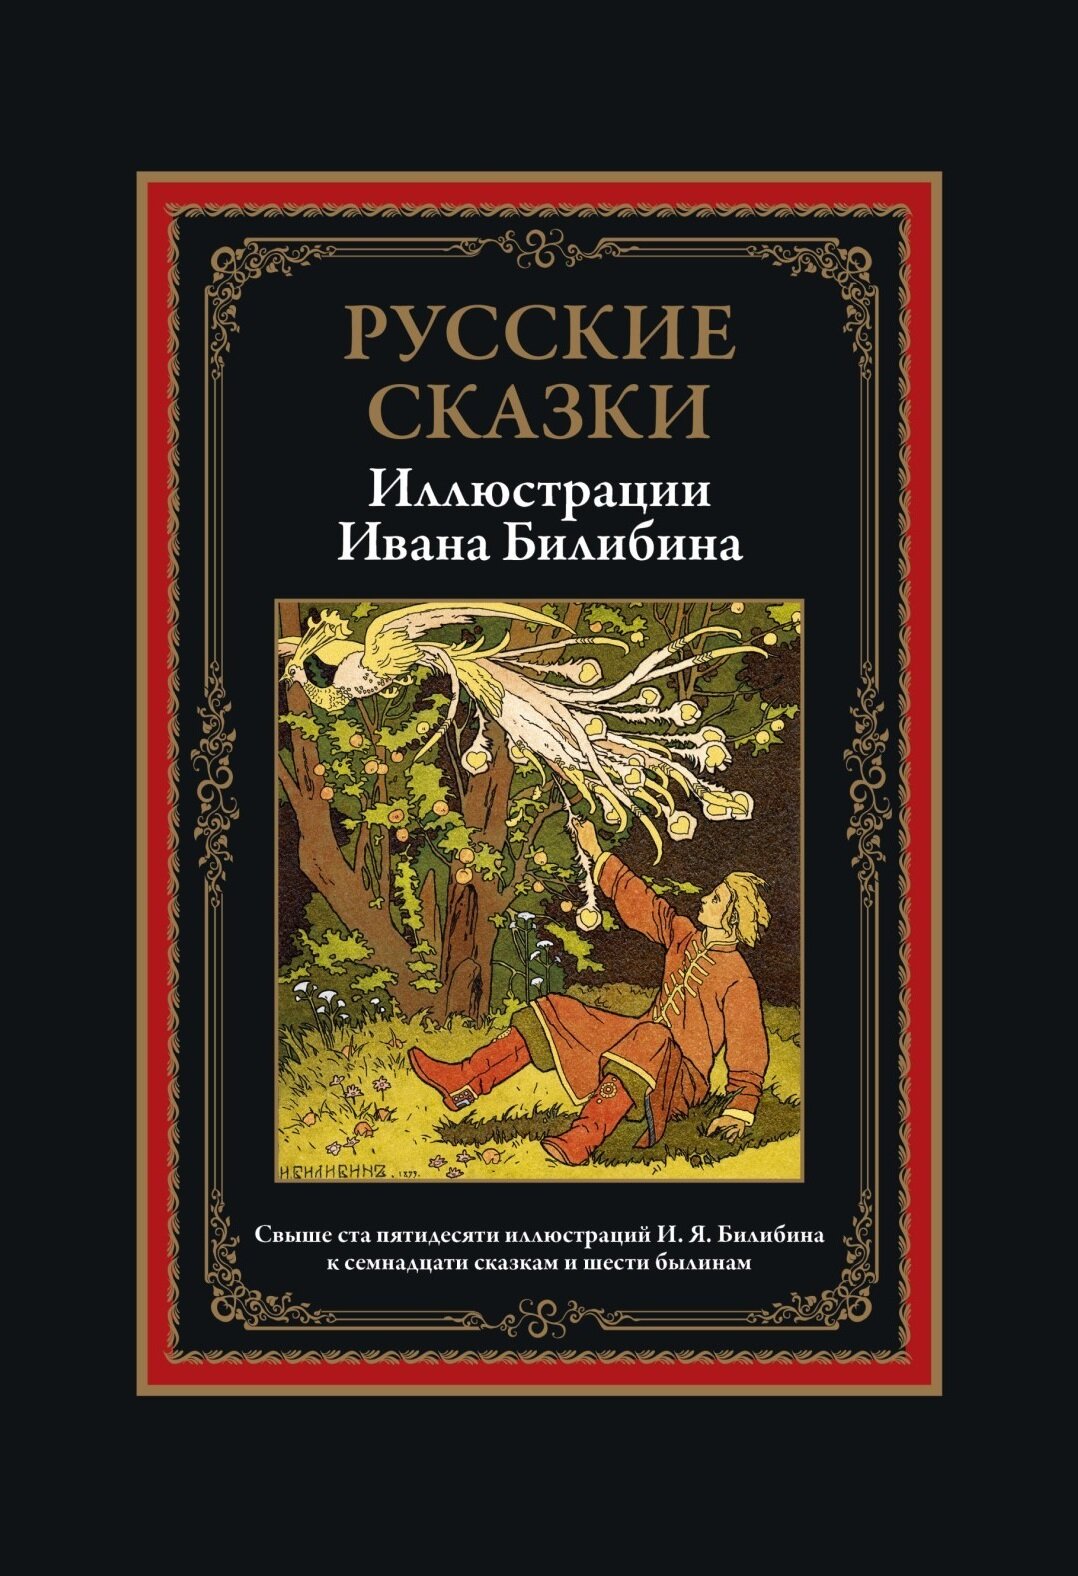 Русские сказки. Иллюстрации Билибина И. Я. БМЛ